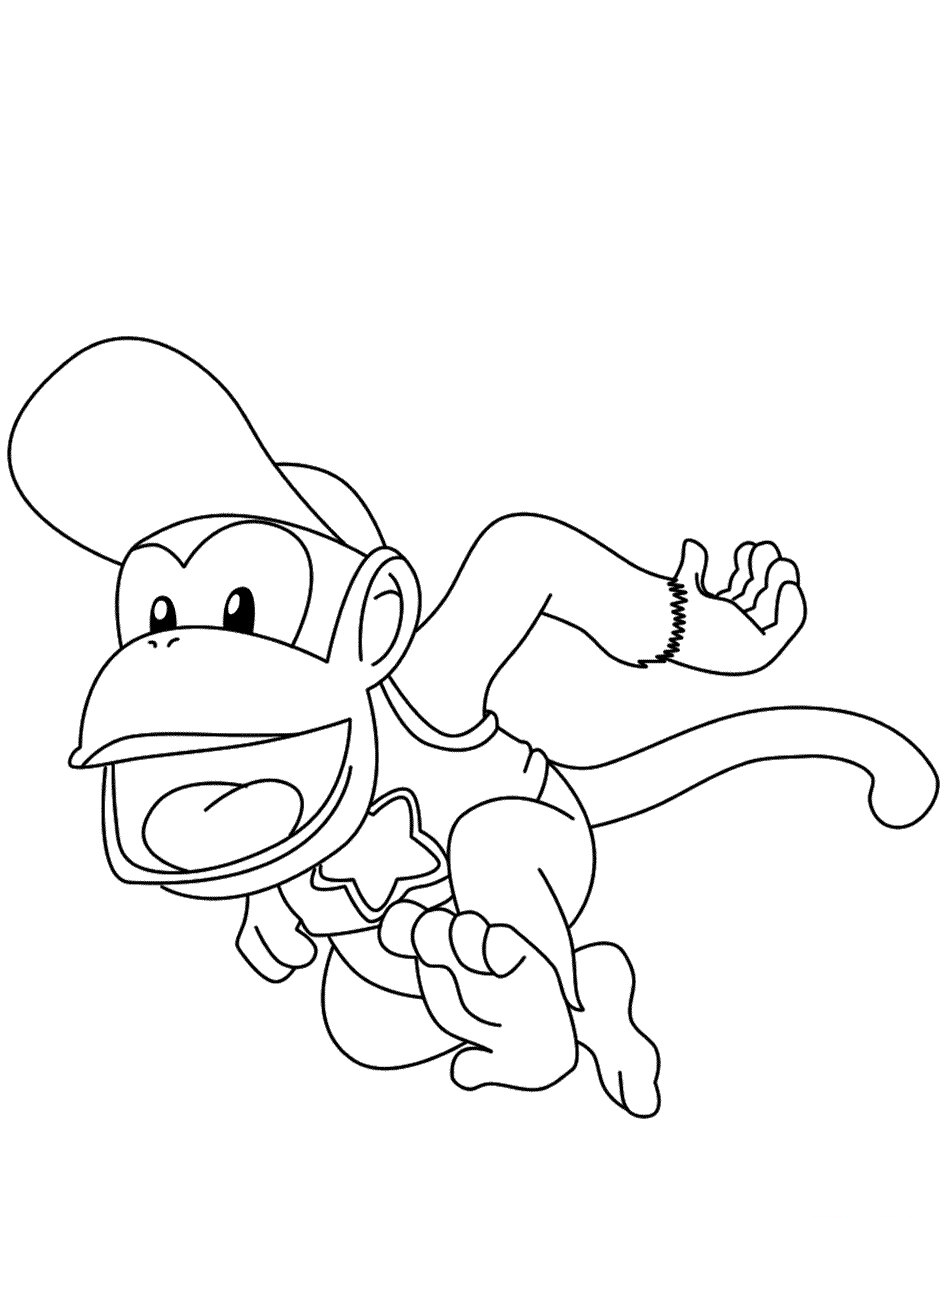 Diddy Kong trägt eine Mütze und rennt vor Diddy Kong davon